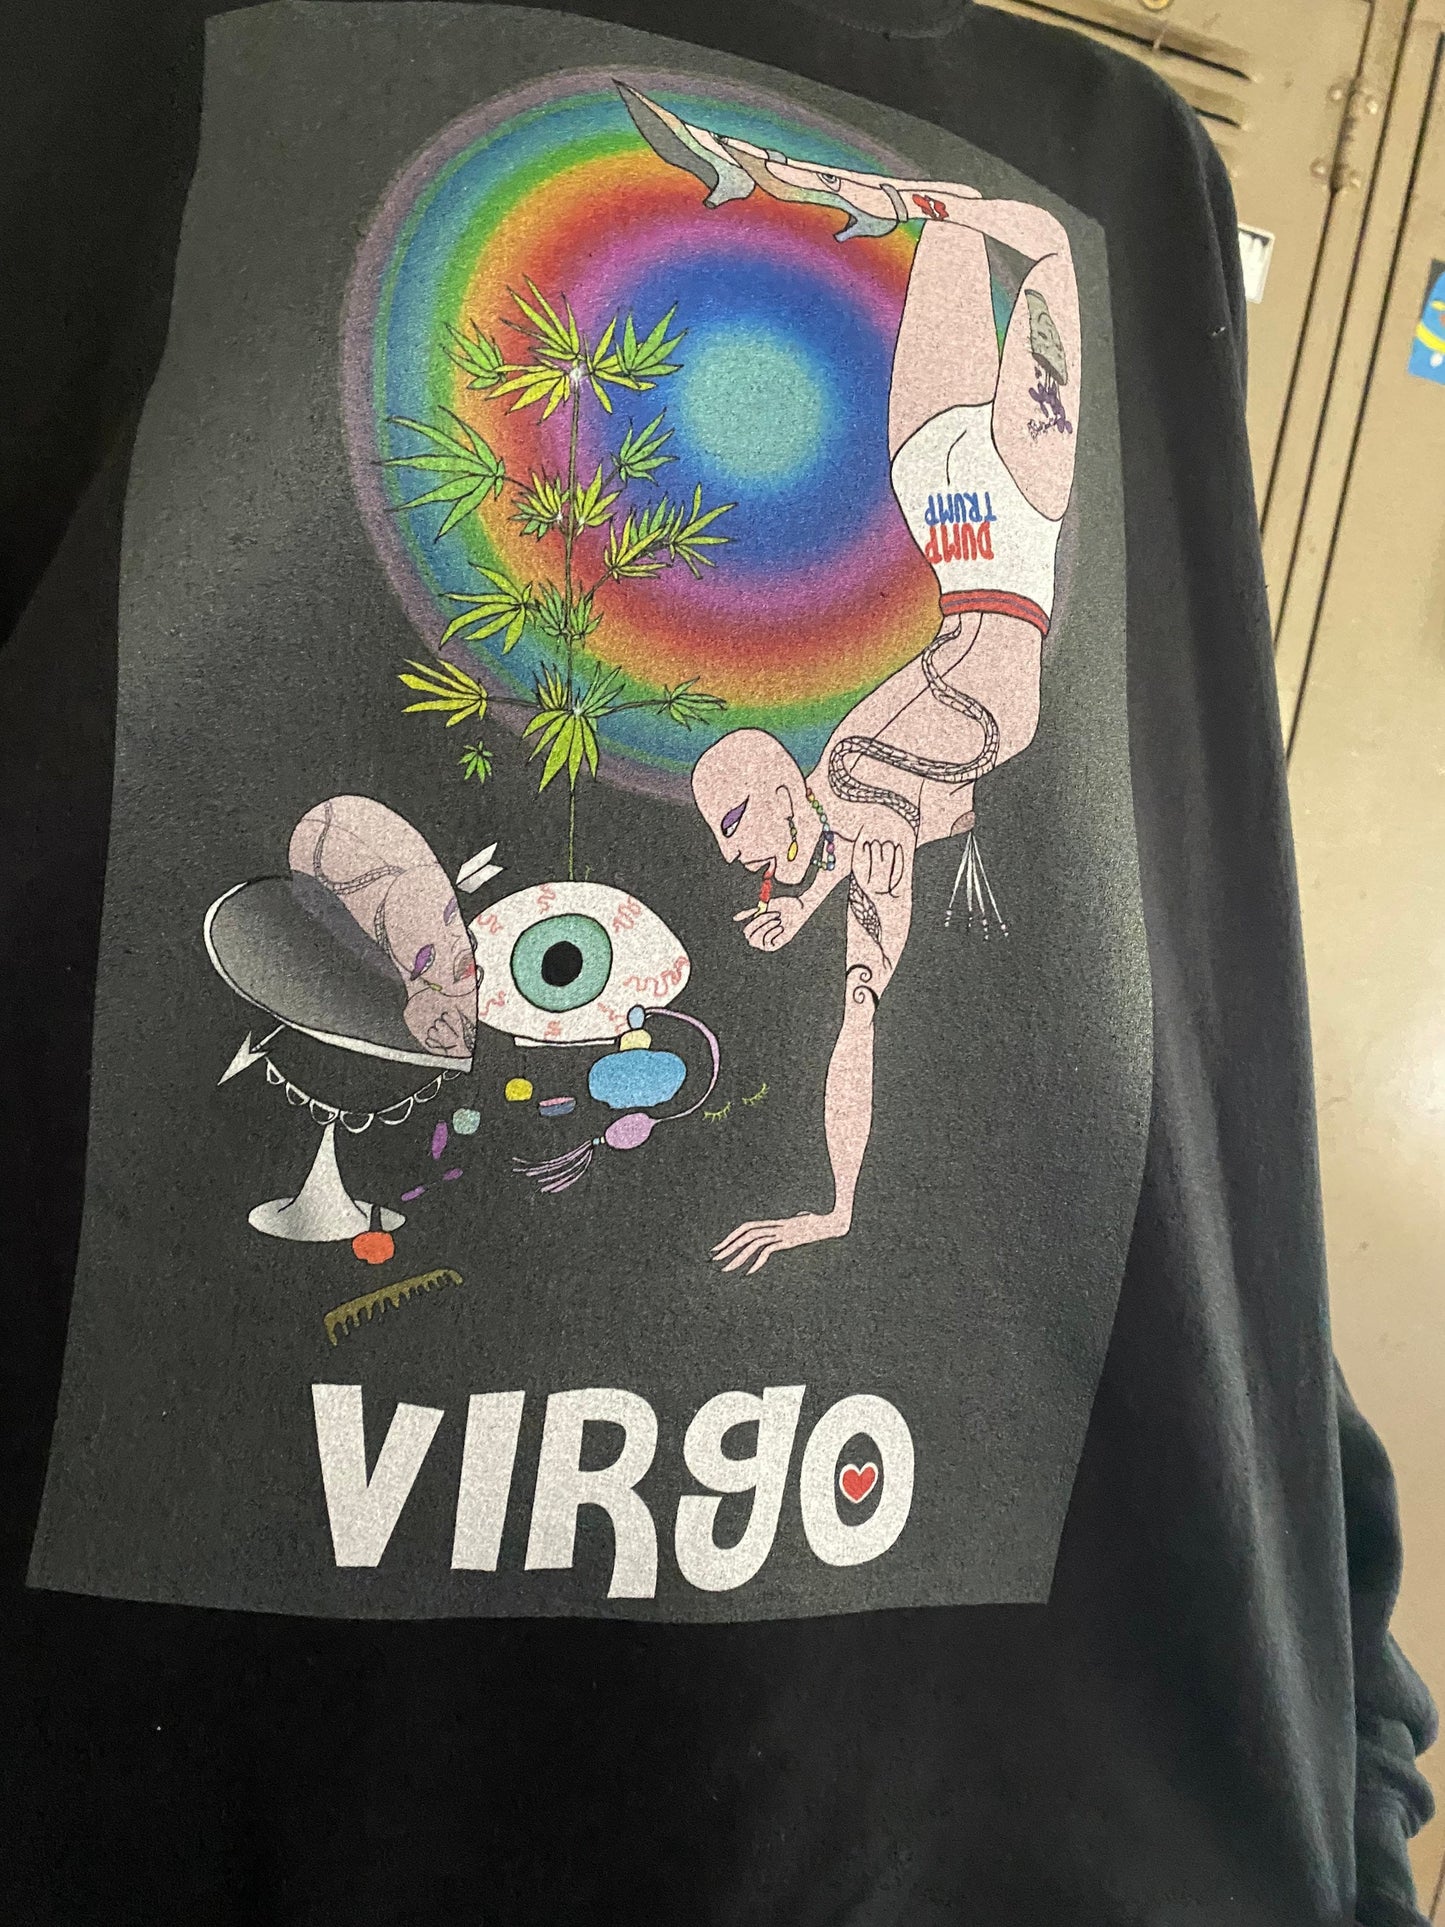 virgo sweatshirt